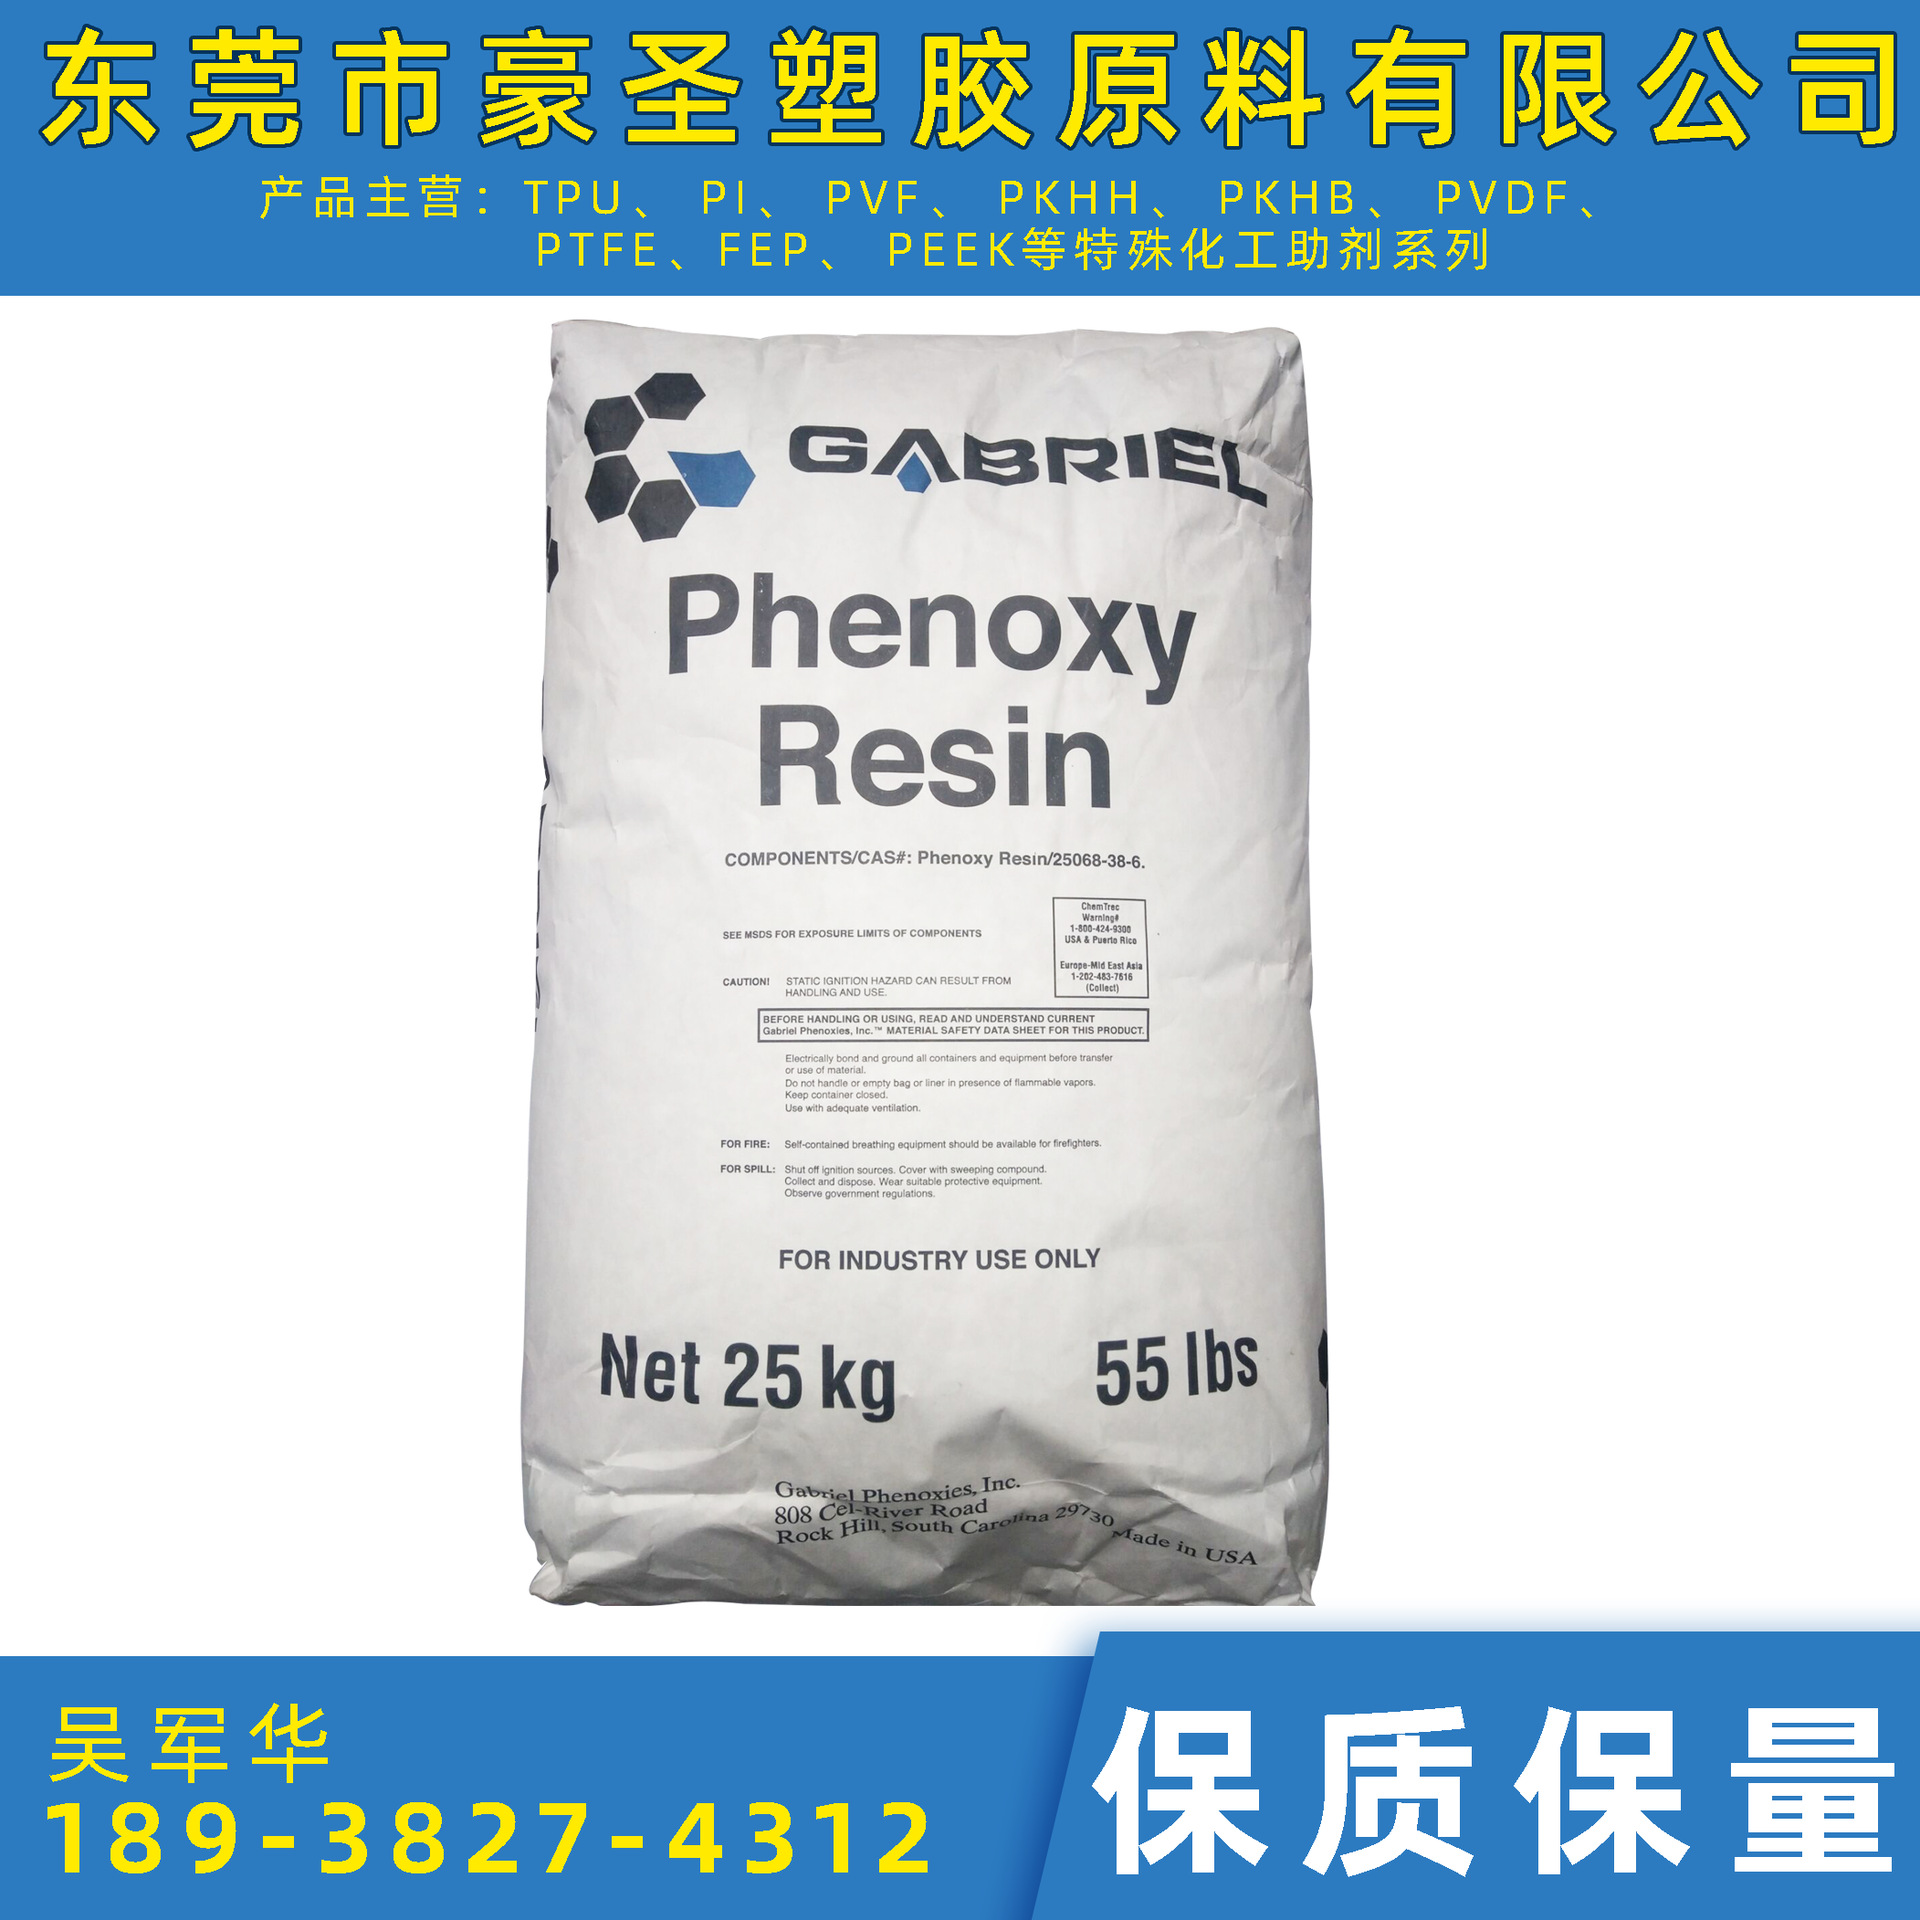 广东地区代售  PKHH  苯氧树脂  PKHB聚酚氧树脂  可零售 13%专票